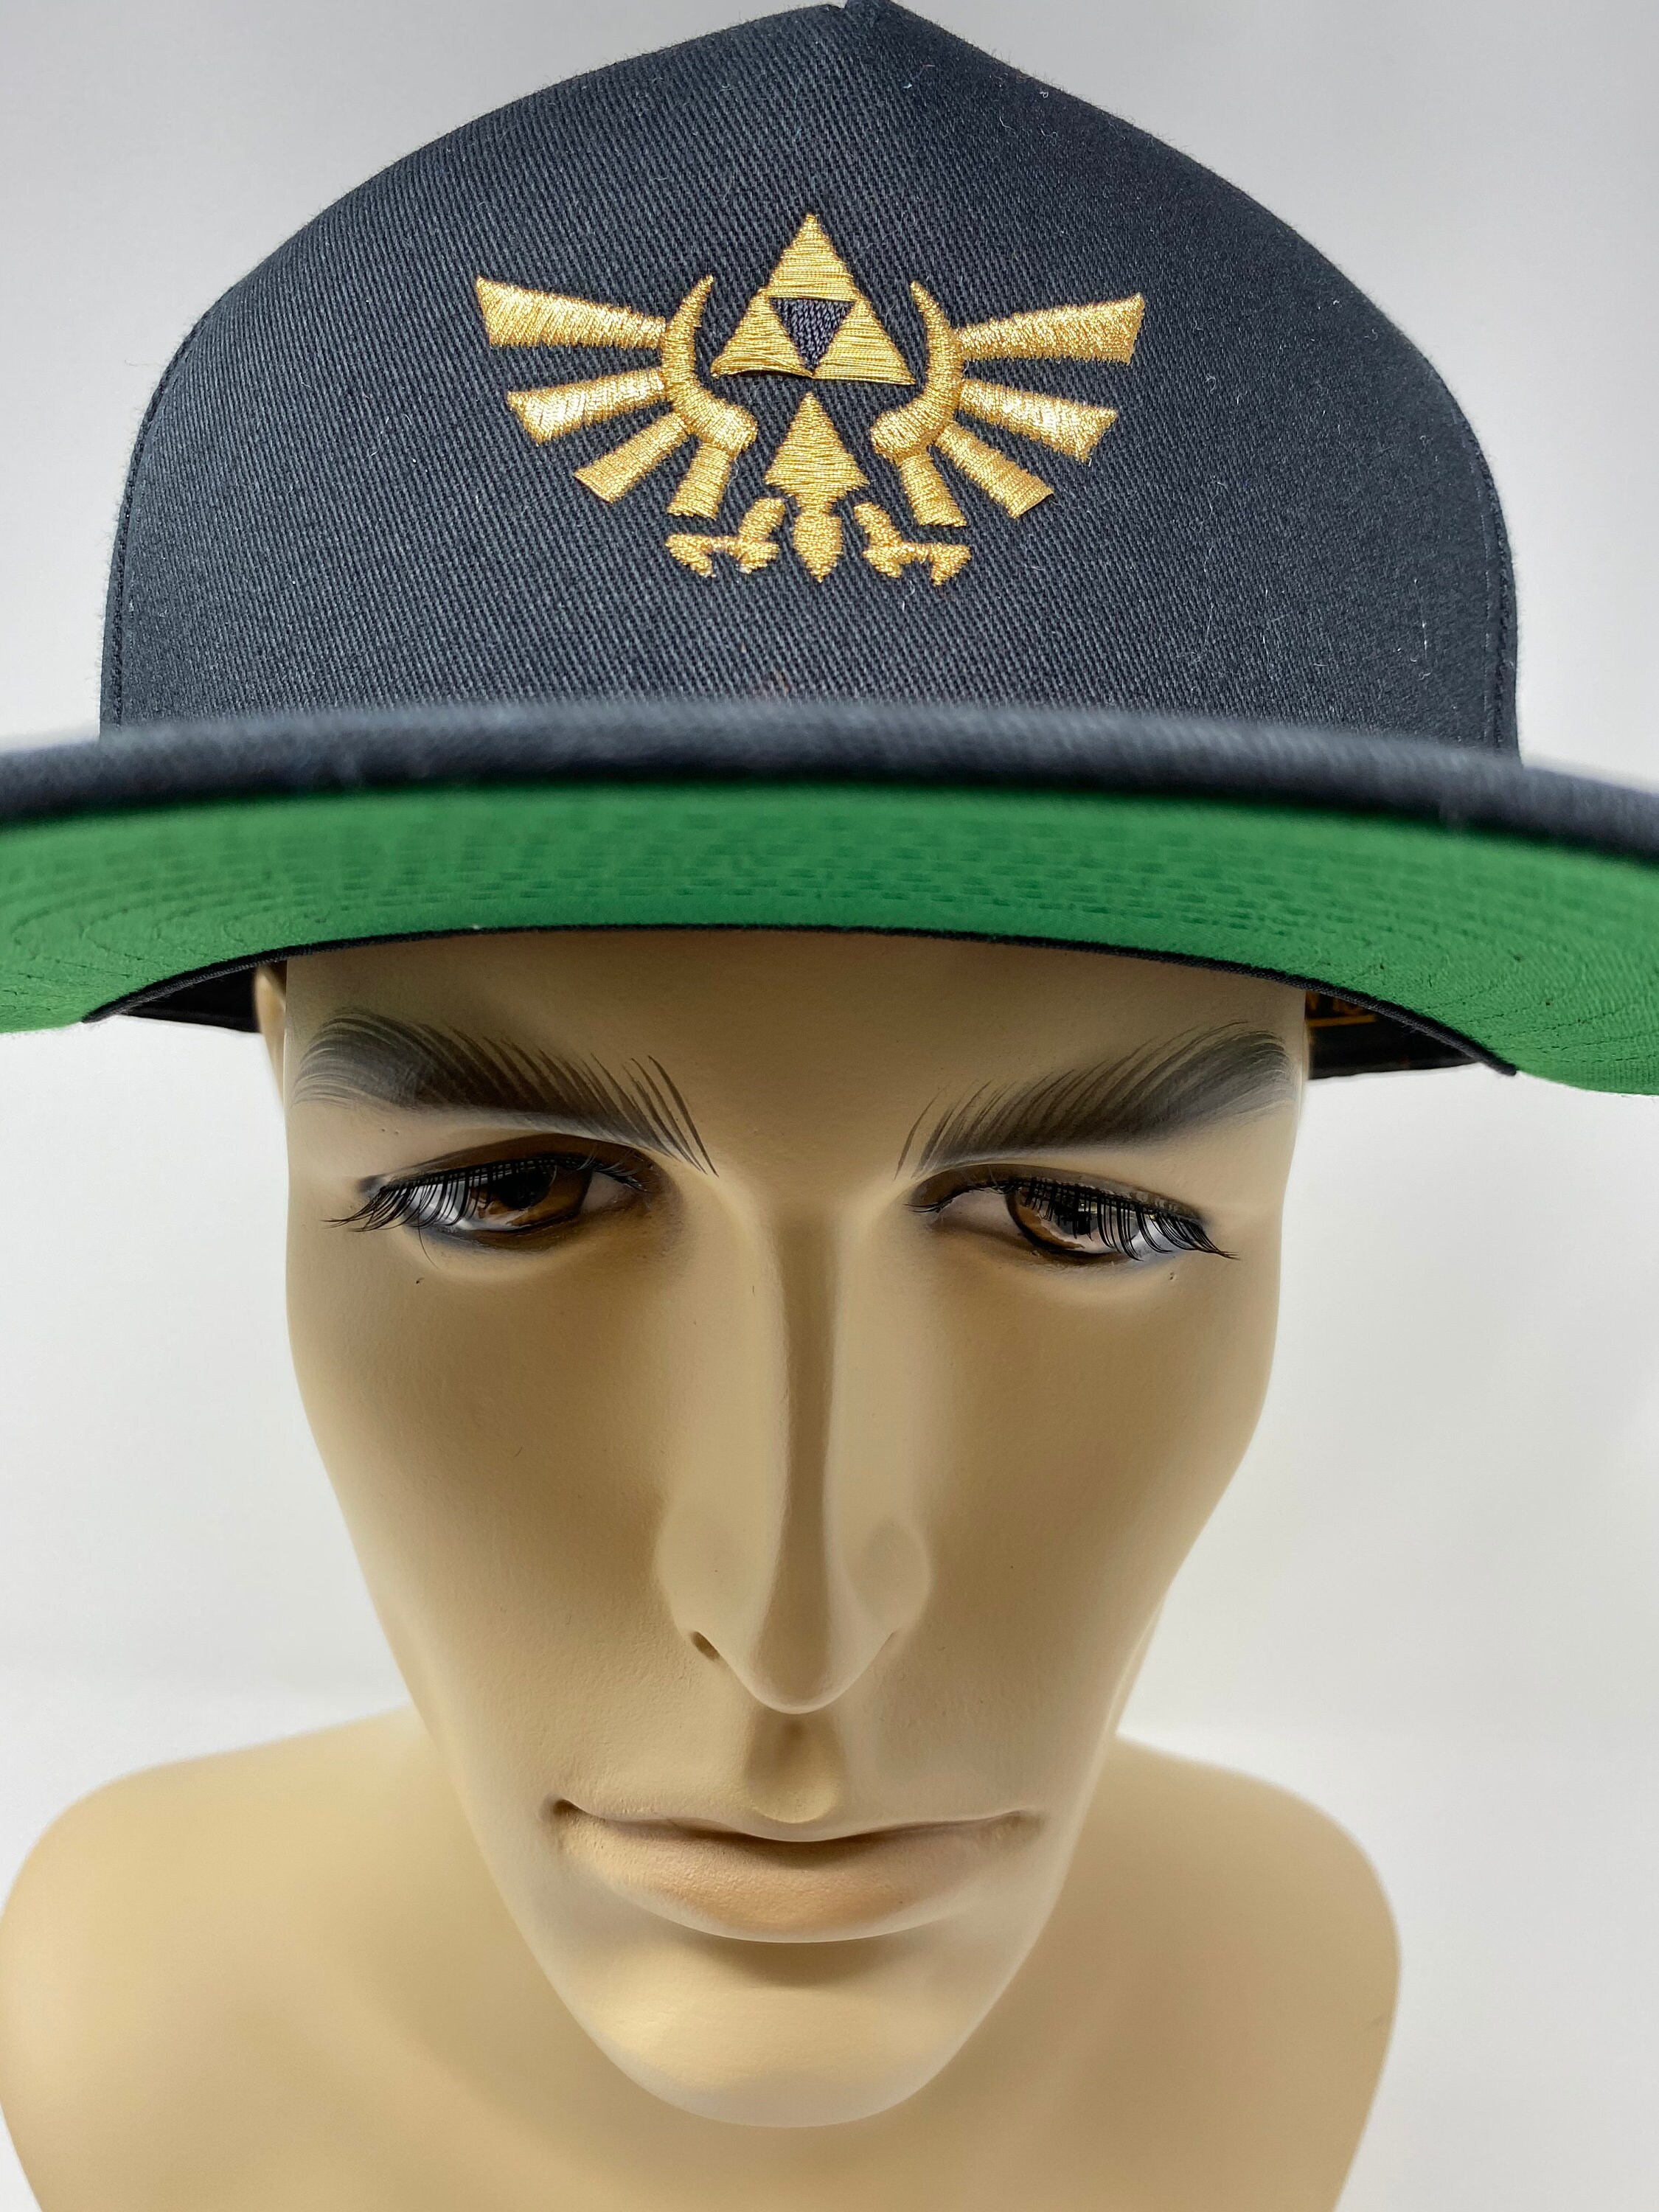 The Legend of Zelda: Embroidered snap back hat | Etsy